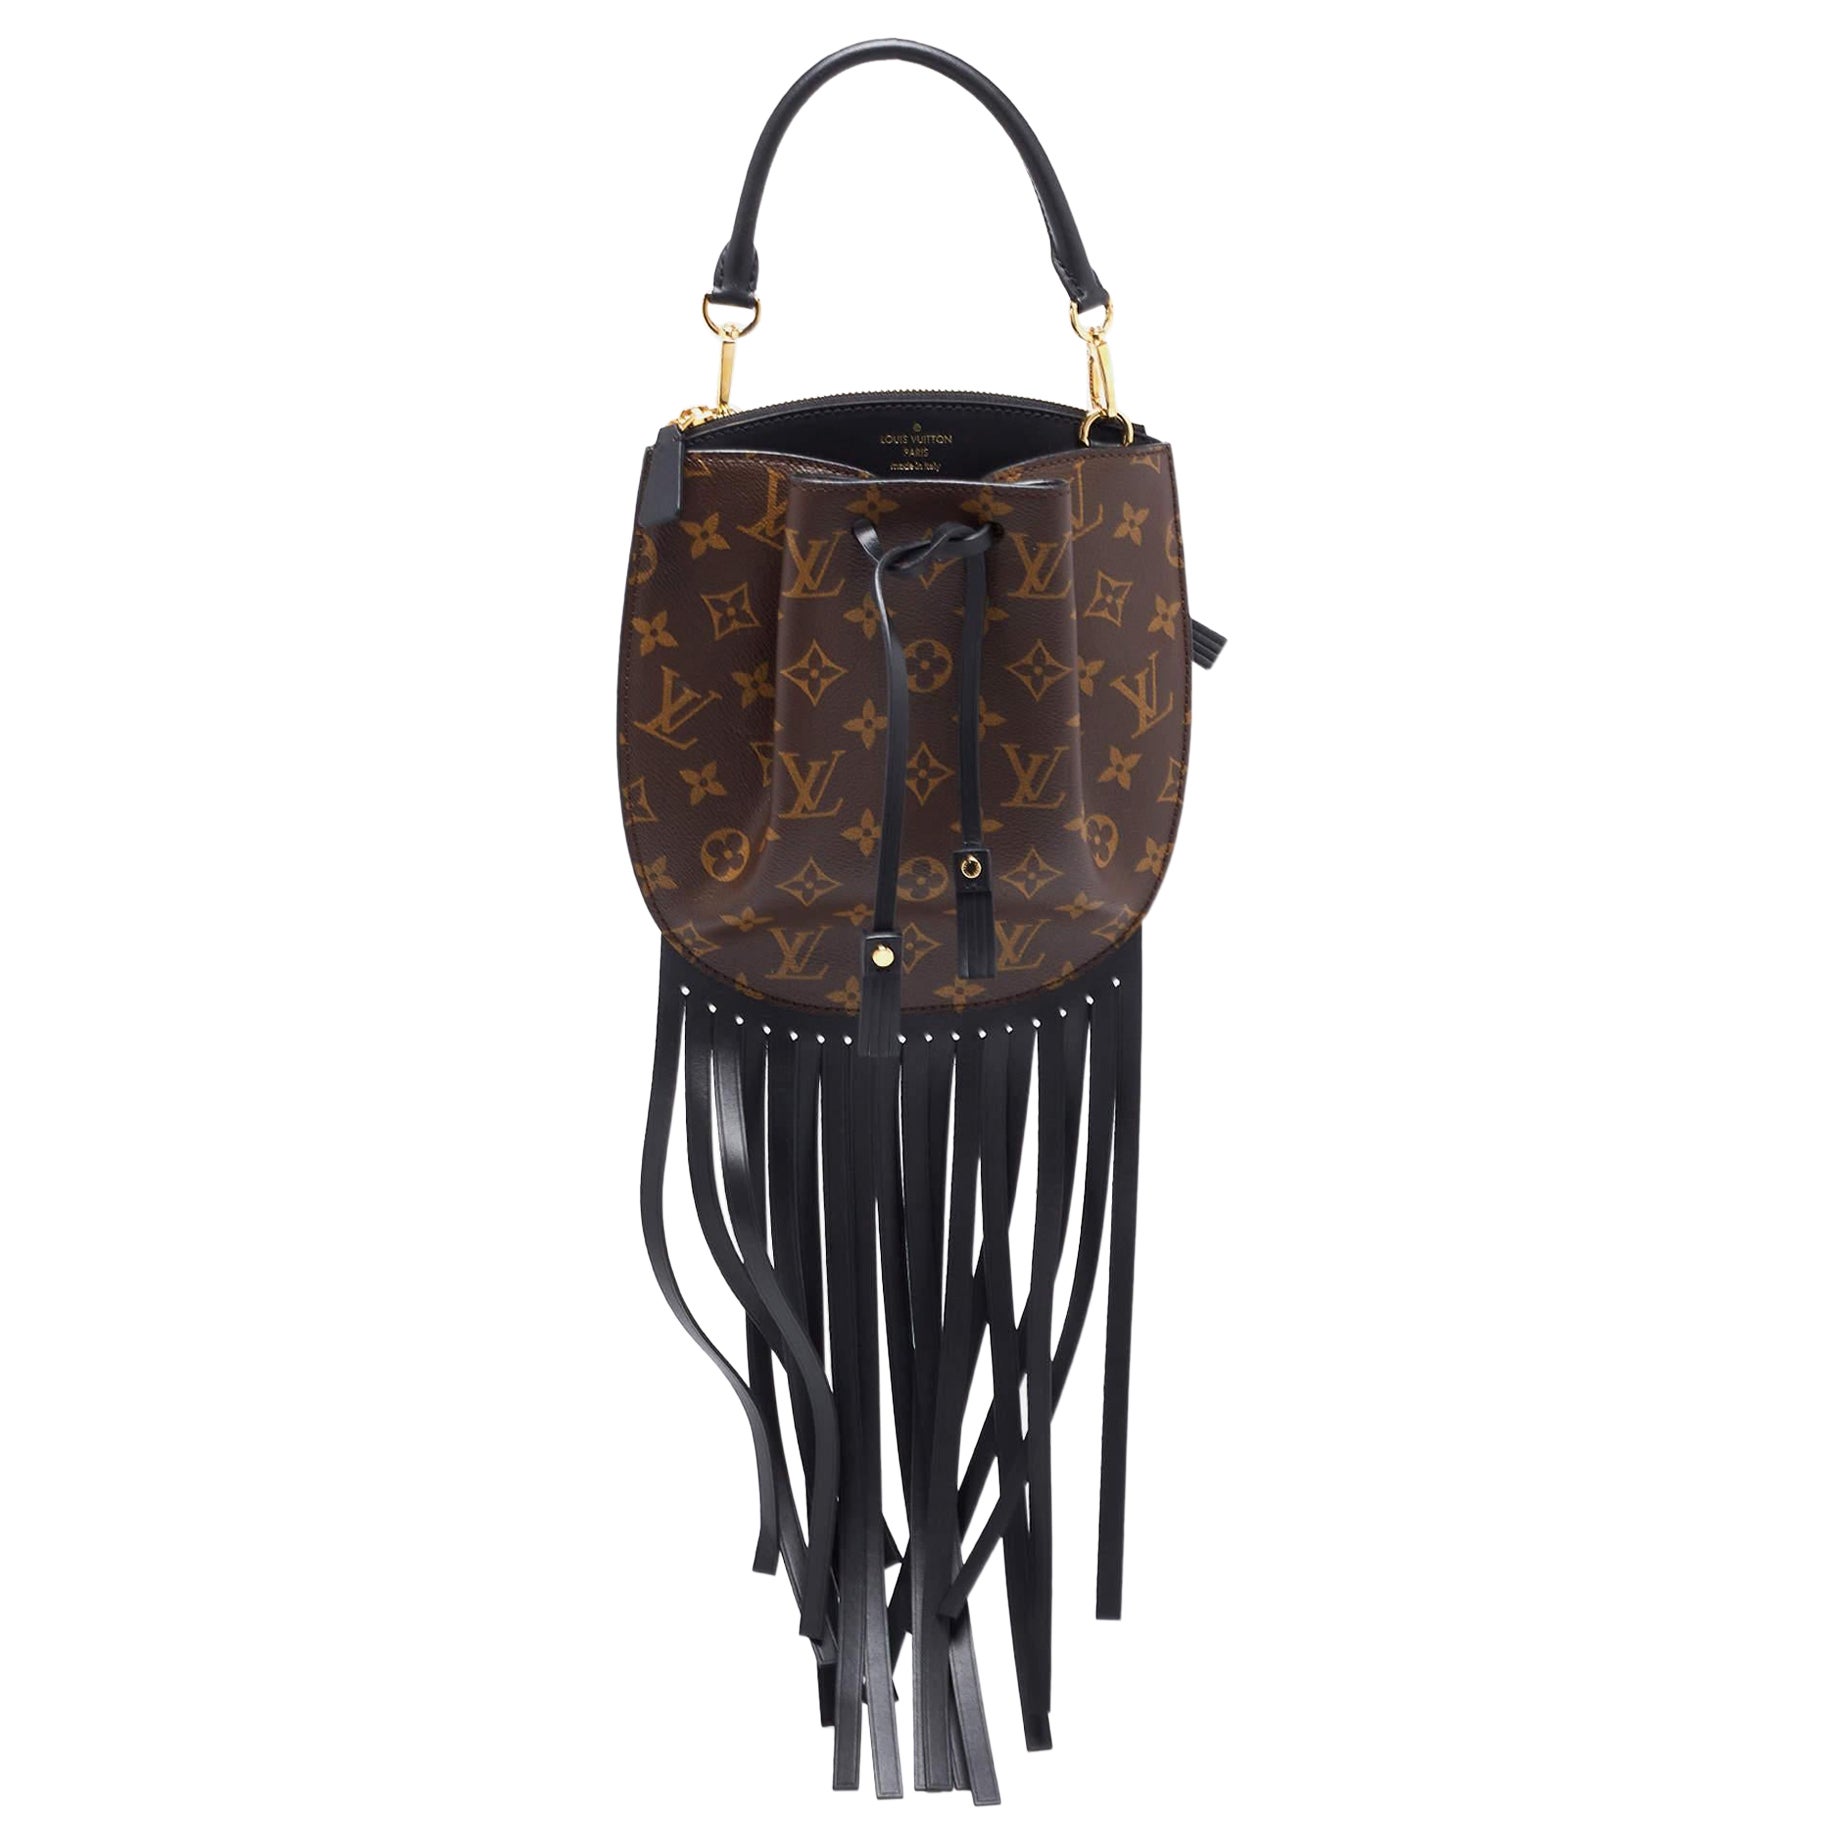 100% Authentic vintage Louis Vuitton fringe bags with a bohemian twist